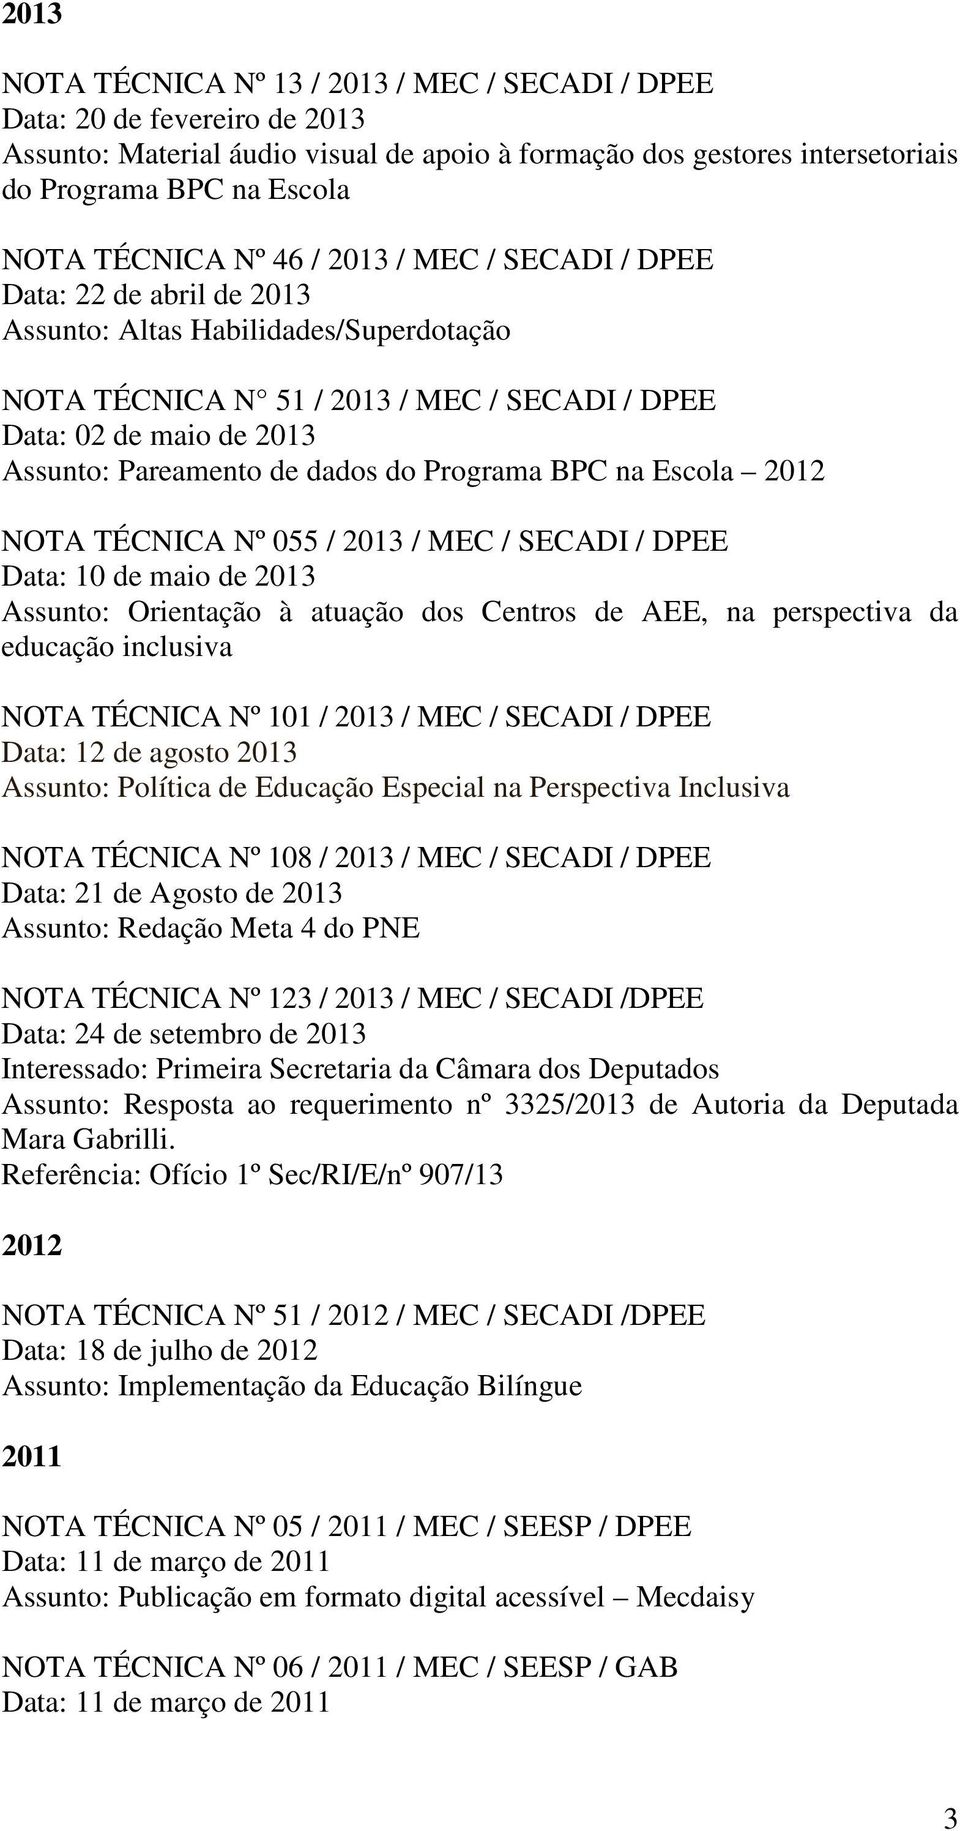 Pareamento de dados do Programa BPC na Escola 2012 NOTA TÉCNICA Nº 055 / 2013 / MEC / SECADI / DPEE Data: 10 de maio de 2013 Assunto: Orientação à atuação dos Centros de AEE, na perspectiva da